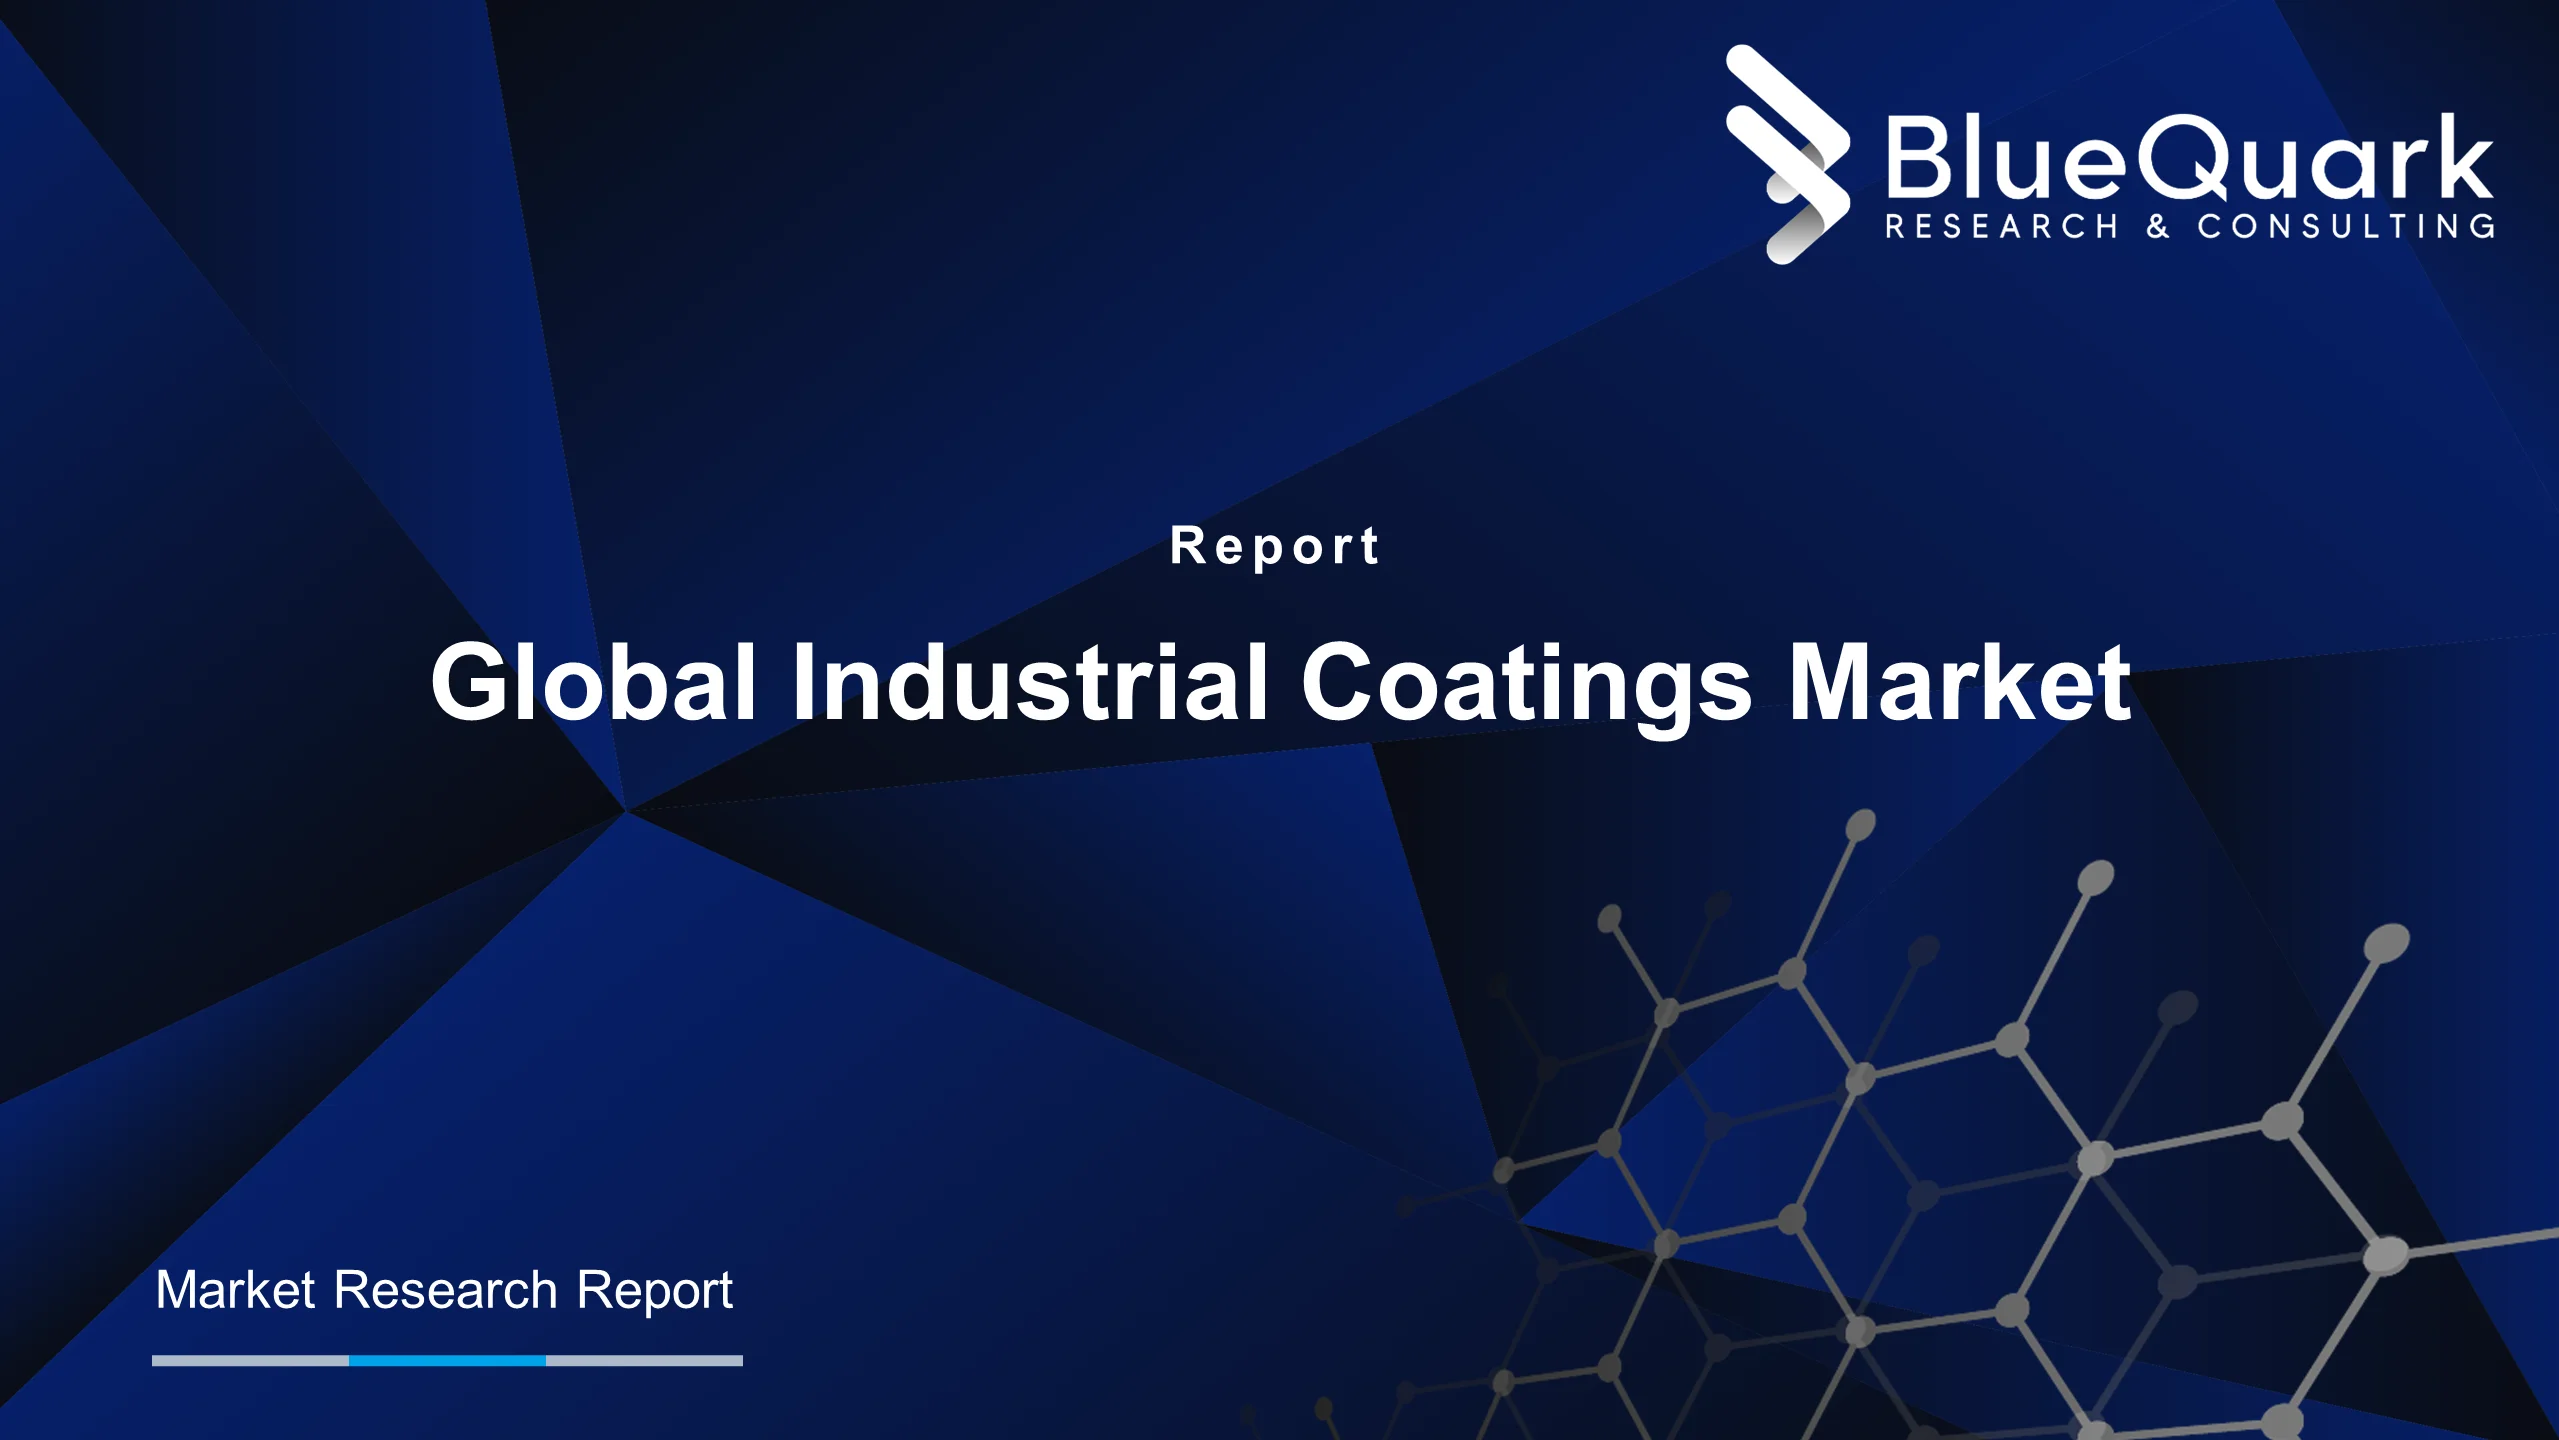 Global Industrial Coatings Market Outlook to 2029